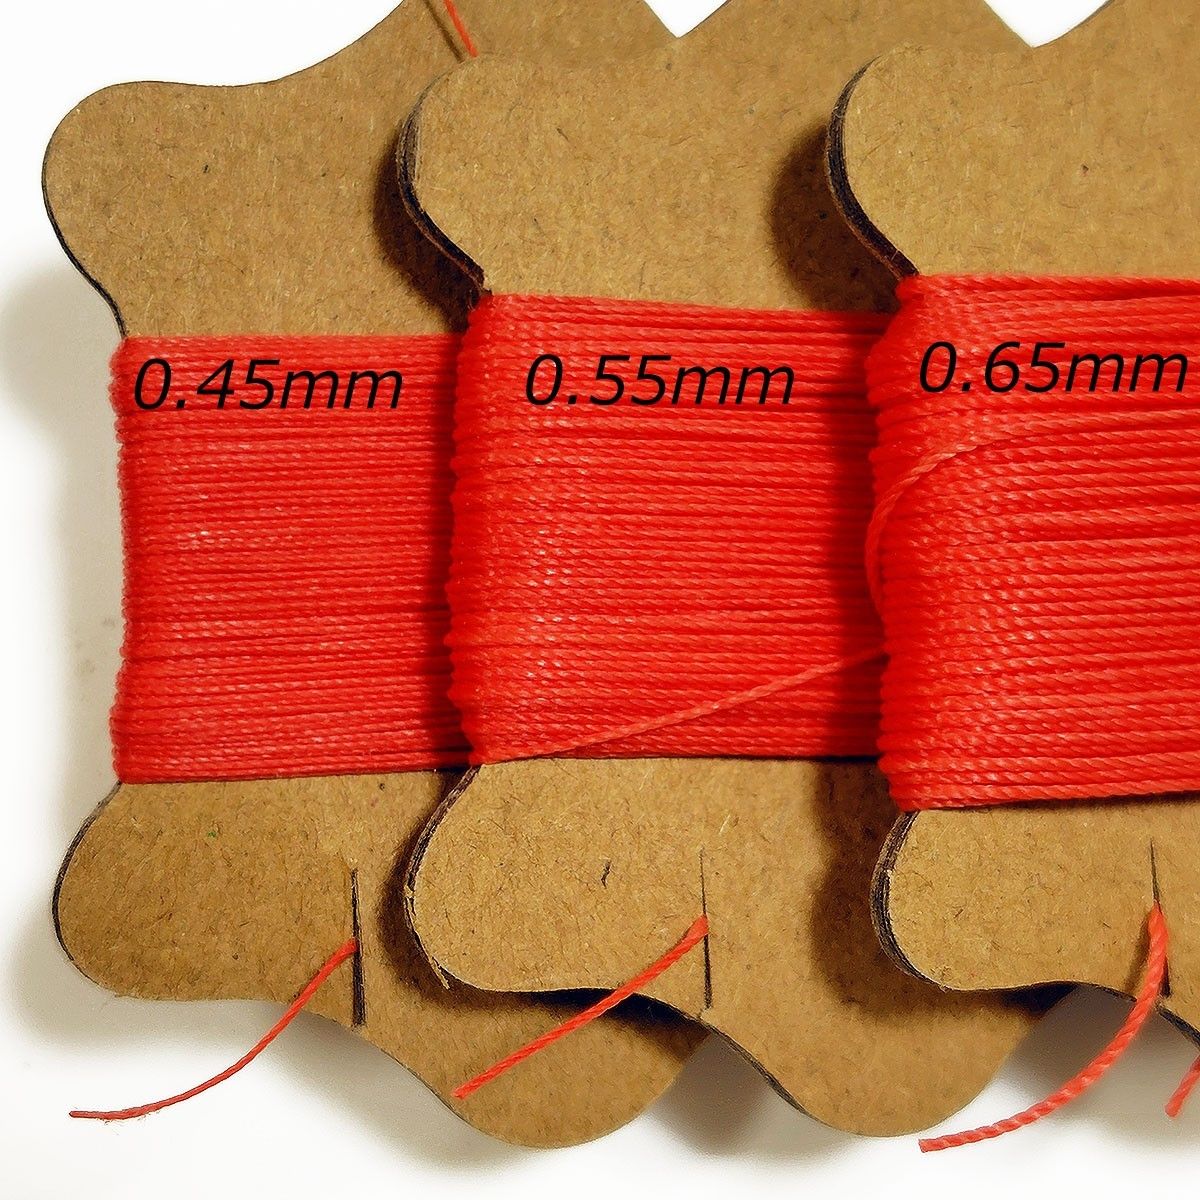 レザークラフト 糸 0.45mm 紺ネイビー 1個 丸紐 ロウビキ糸 ワックスコード 蝋引き糸 ロウ引き糸 ポリエステル